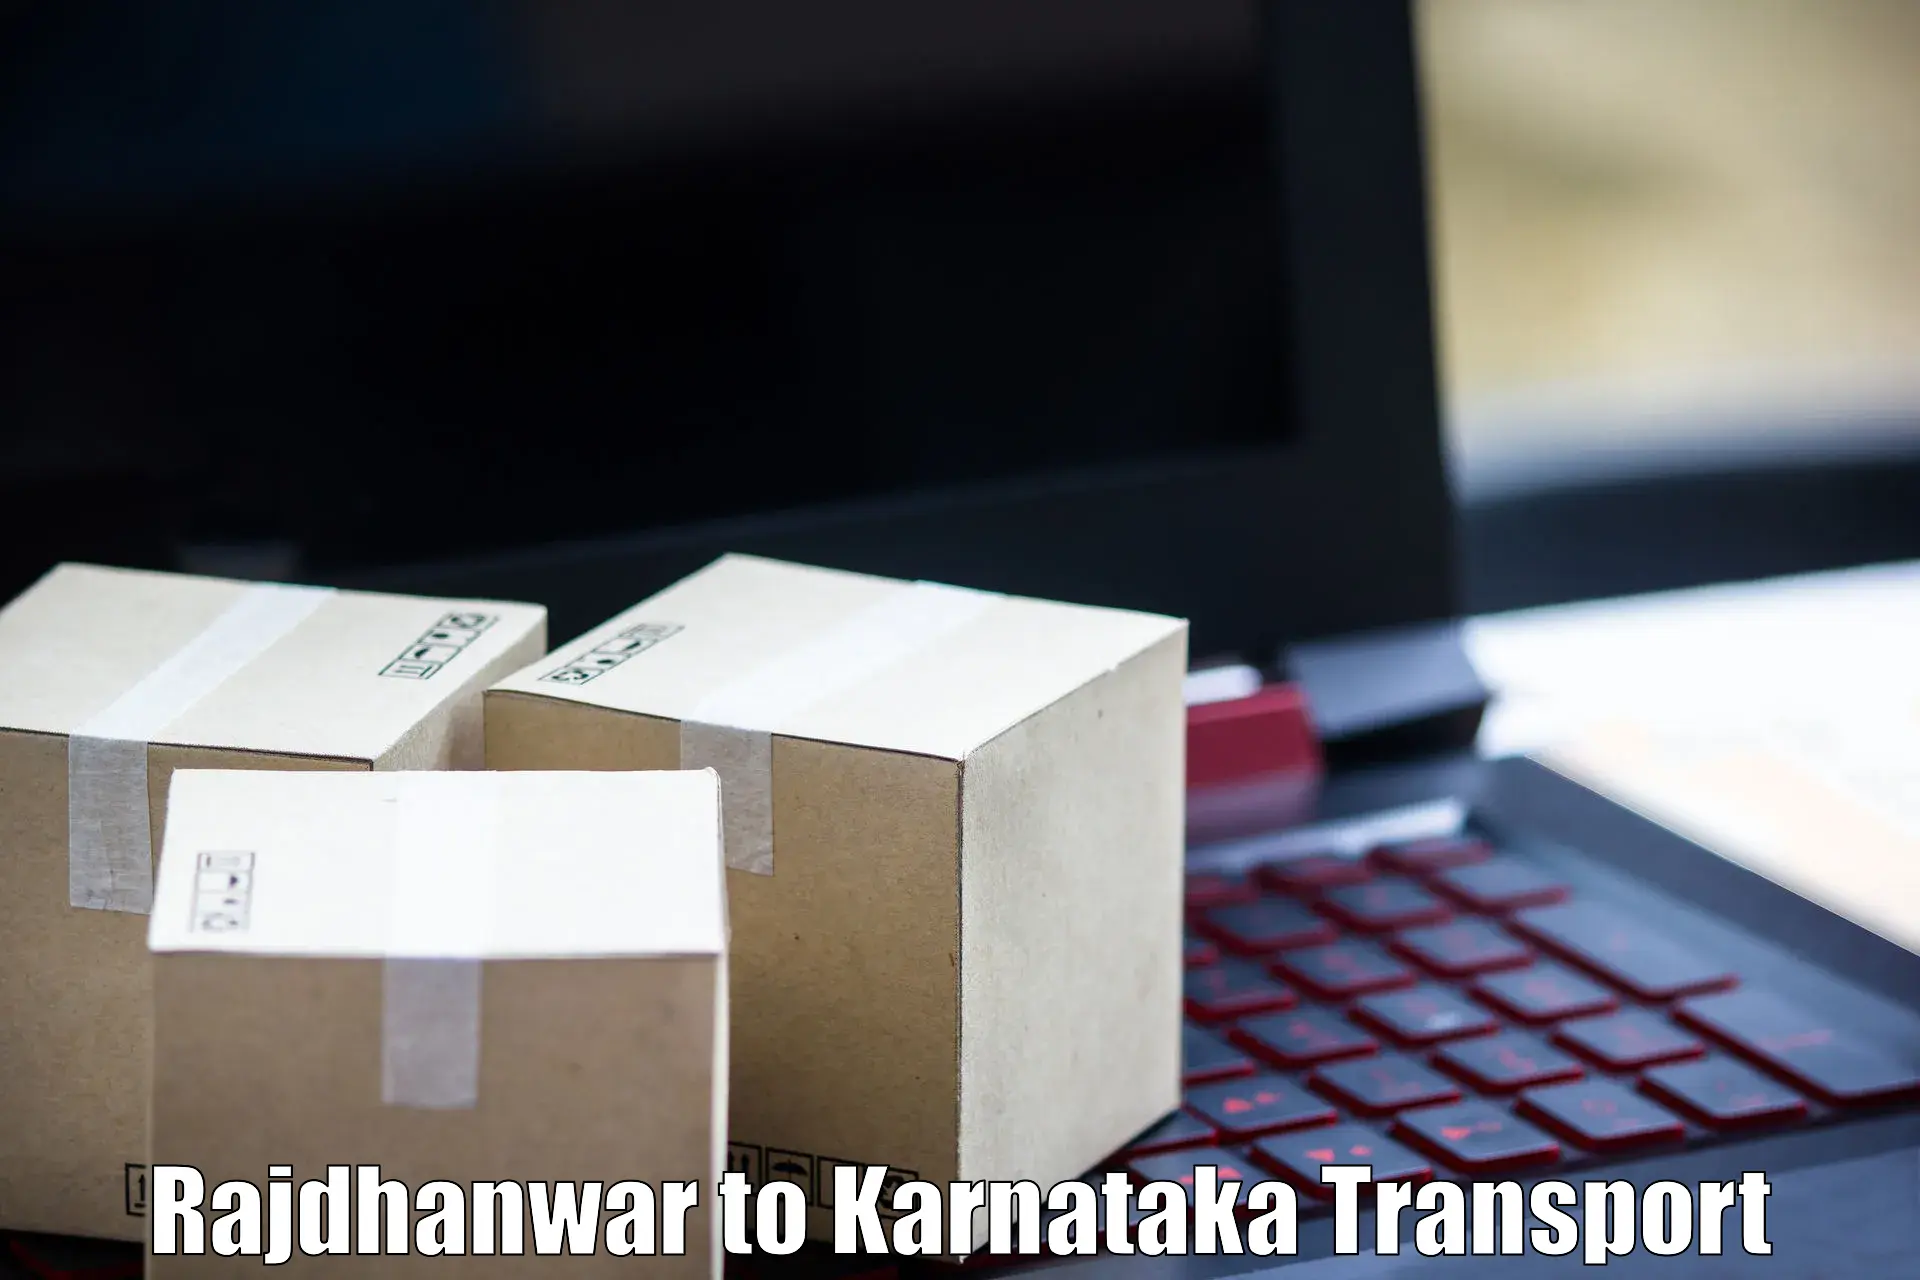 Intercity goods transport in Rajdhanwar to Kanjarakatte